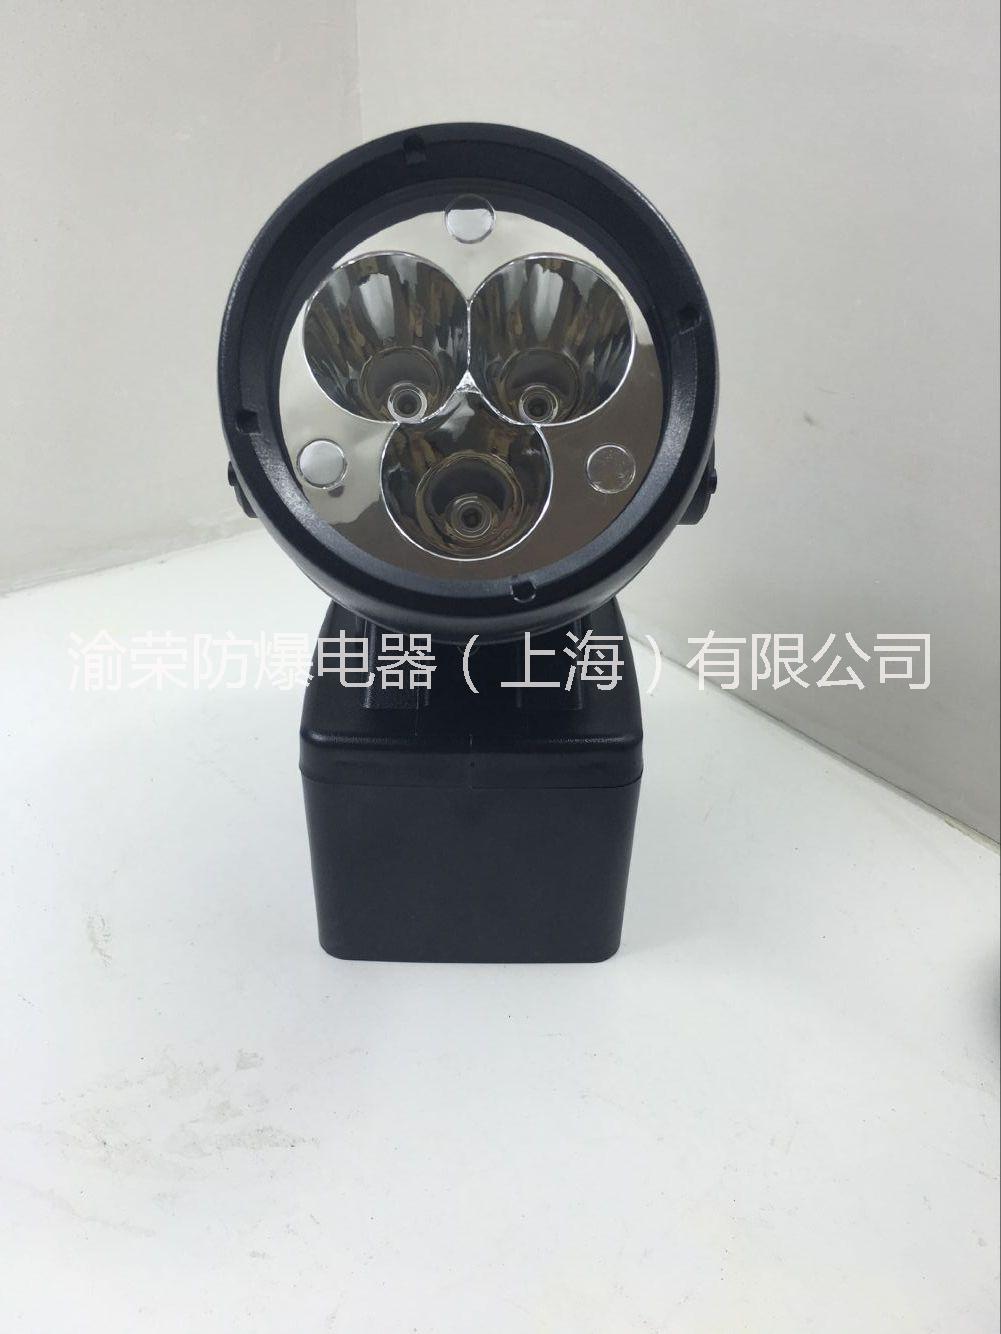 上海渝荣LED防爆轻便式多功能强光灯特价